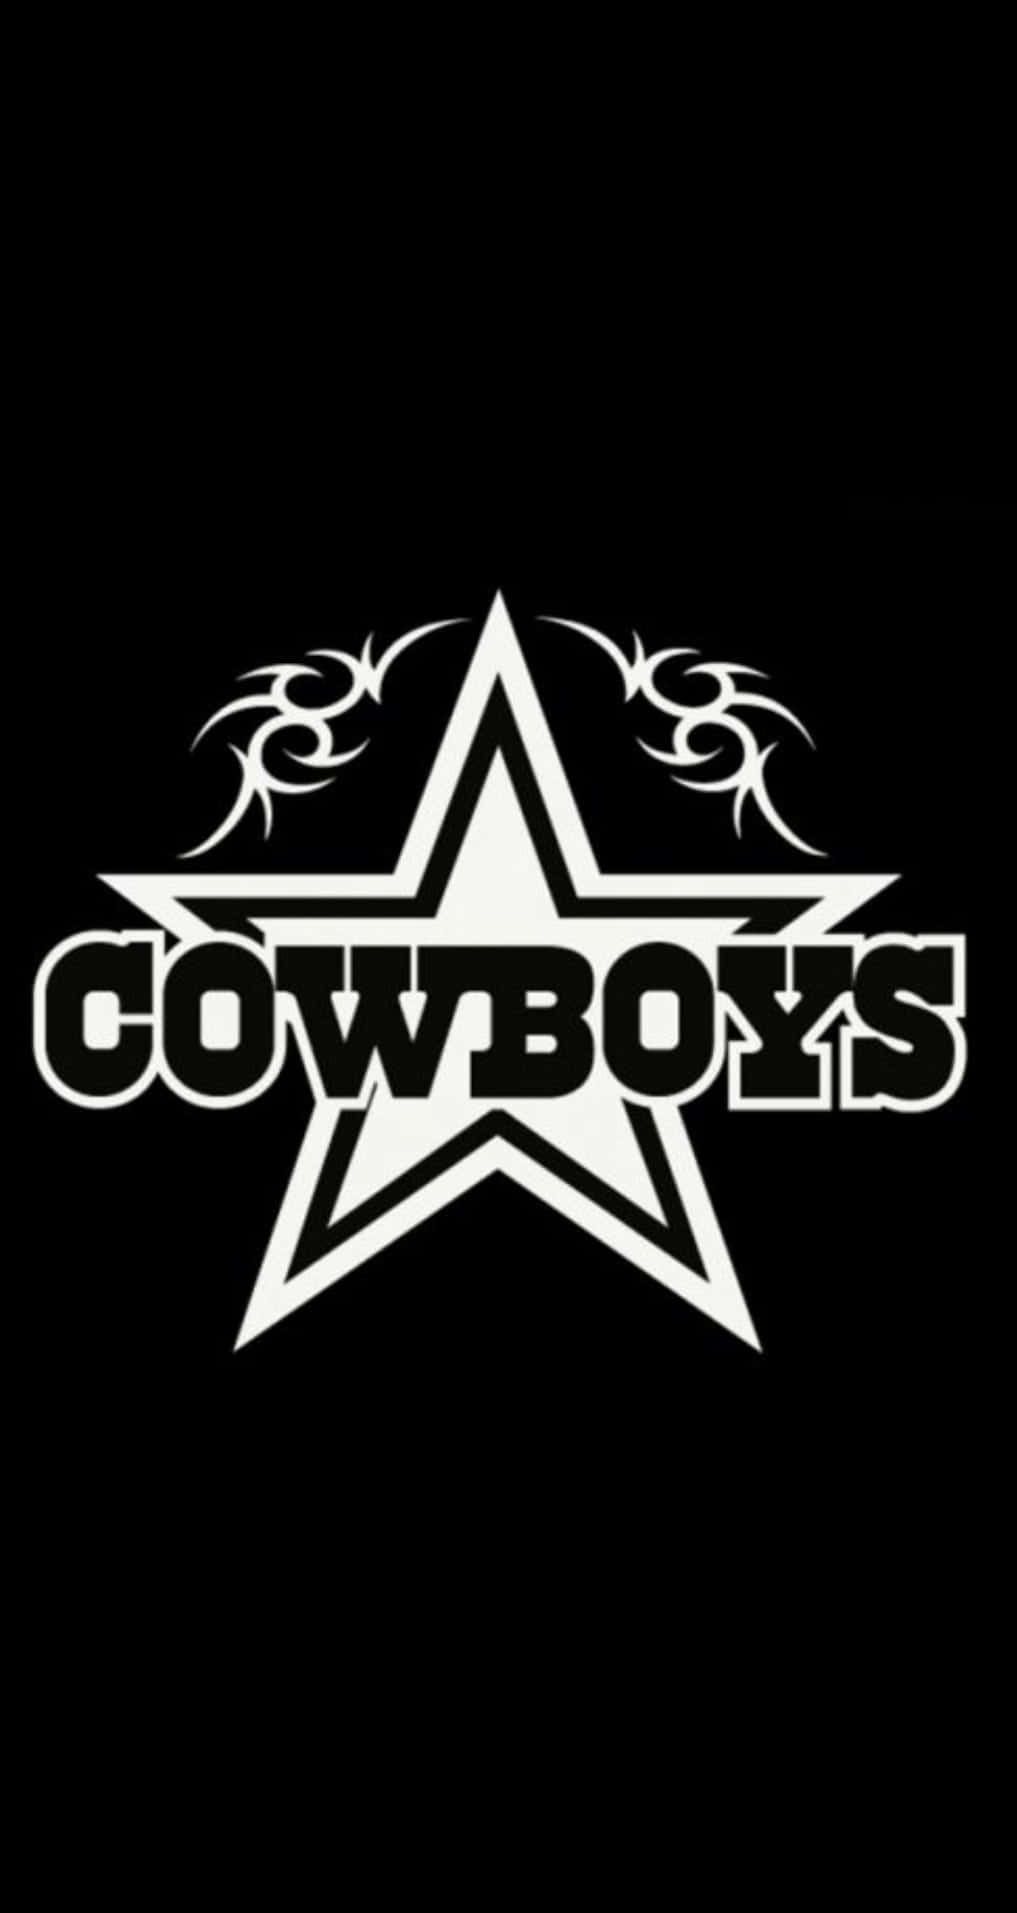 Cowboys'heritage: En Rodeo-tradition.